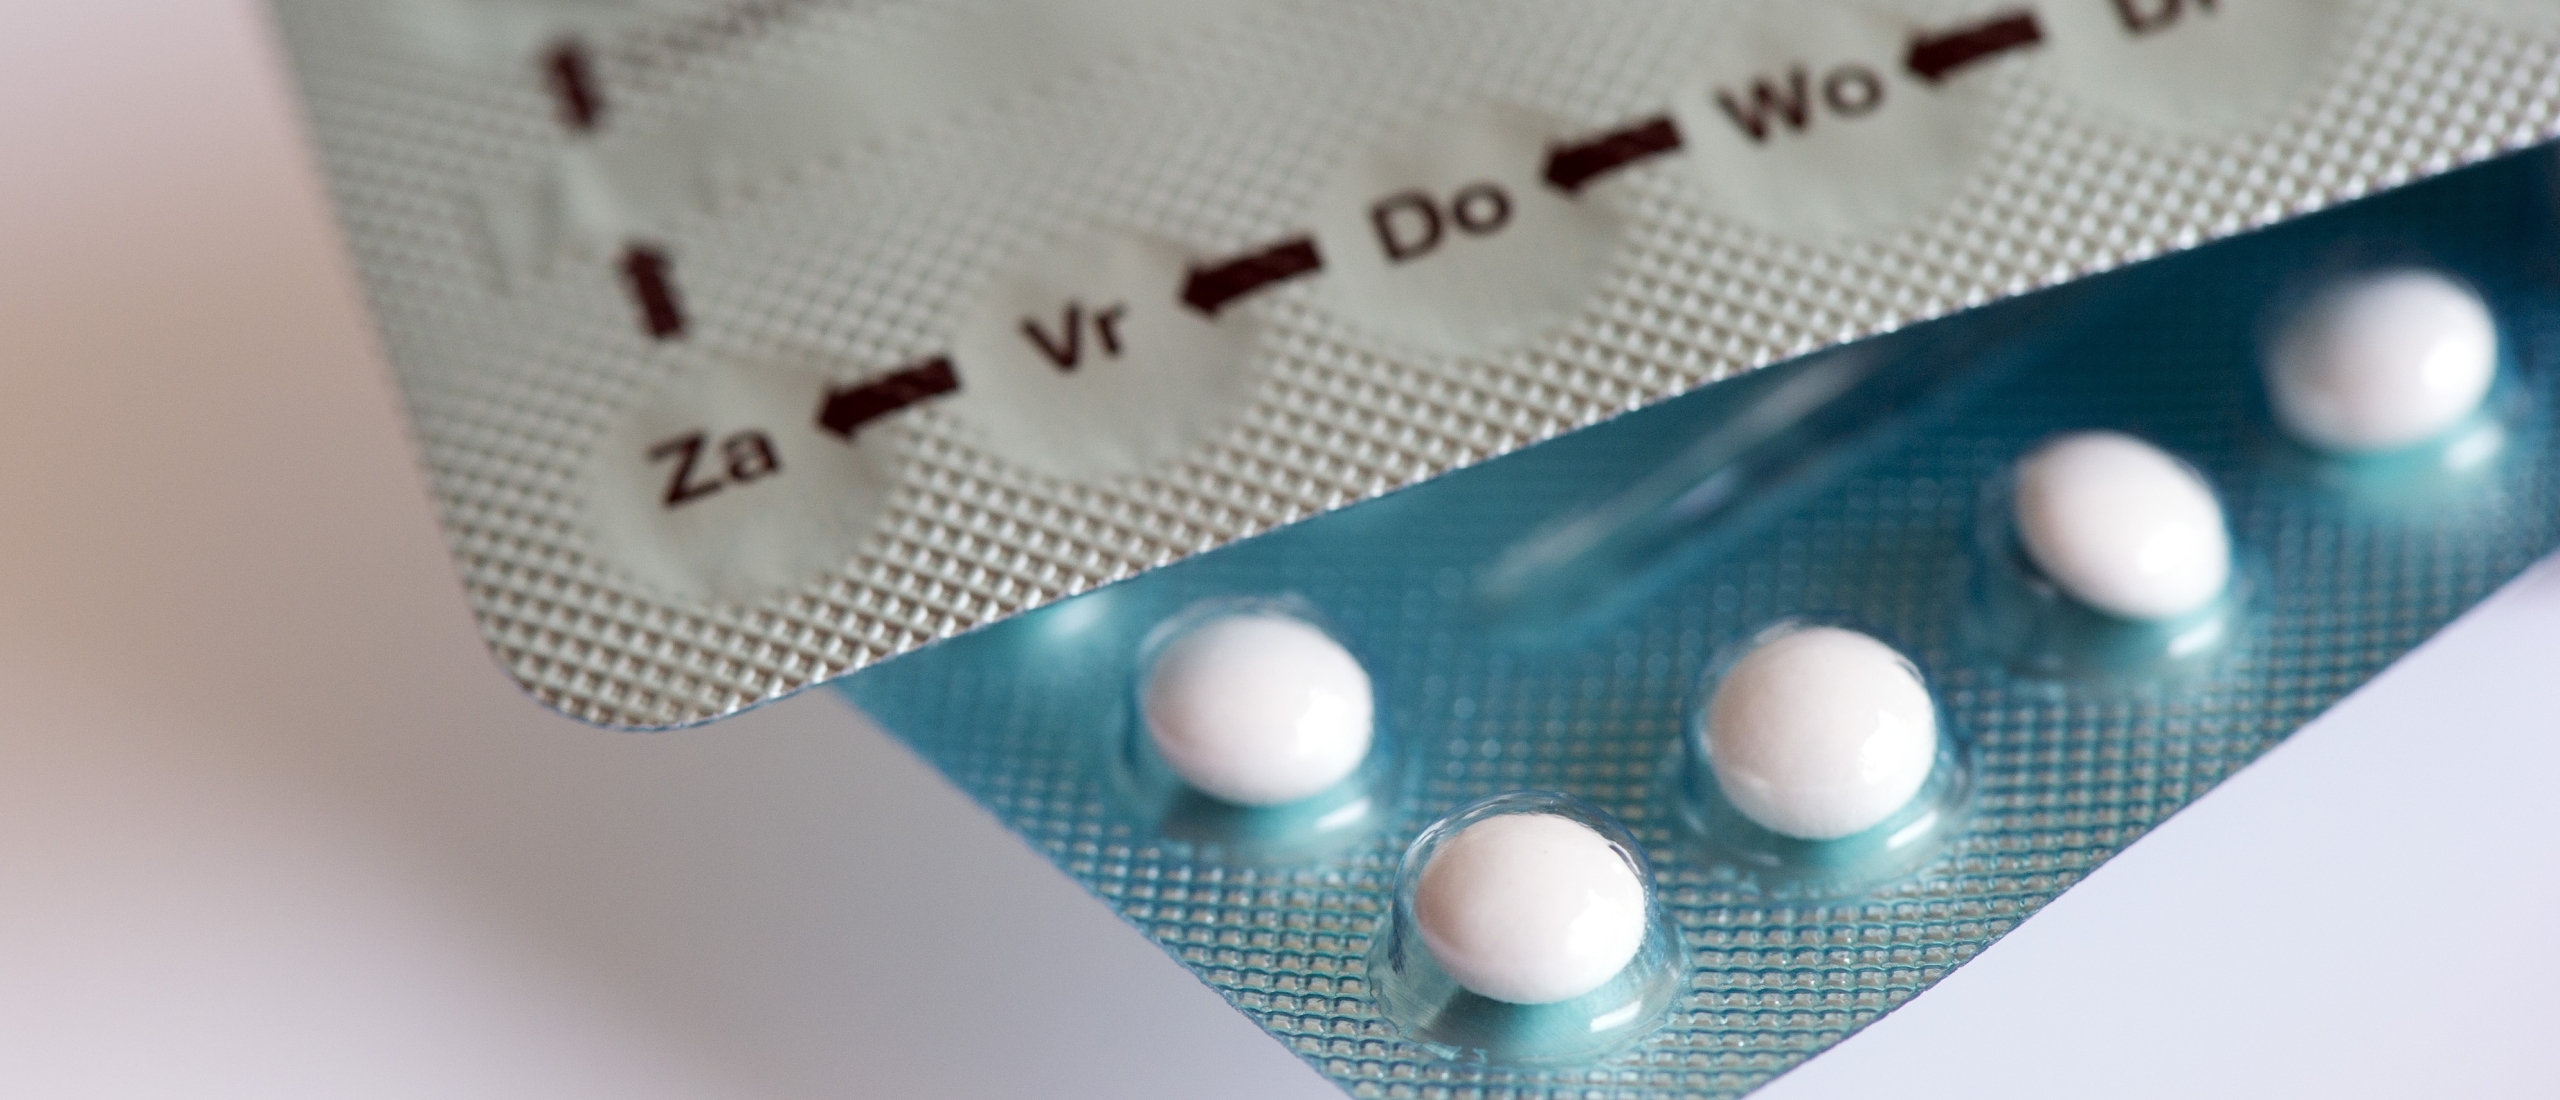 Staat hoeft niet voor gratis anticonceptie voor vrouwen te zorgen